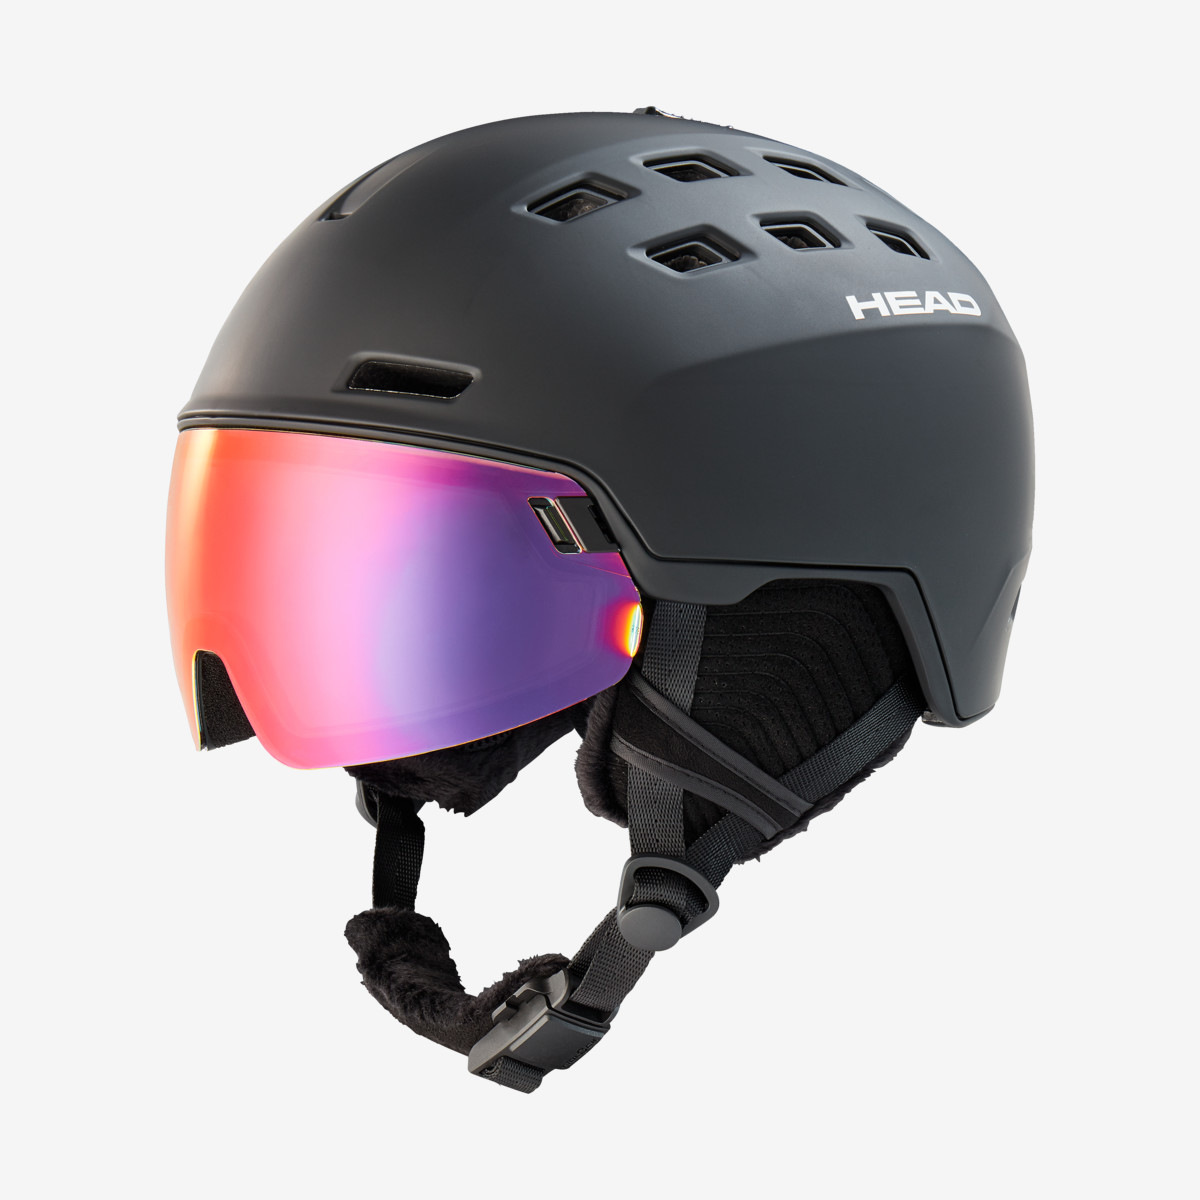 Ski Visor Helmet -  head RADAR 5K POLA VISOR SKI HELMET